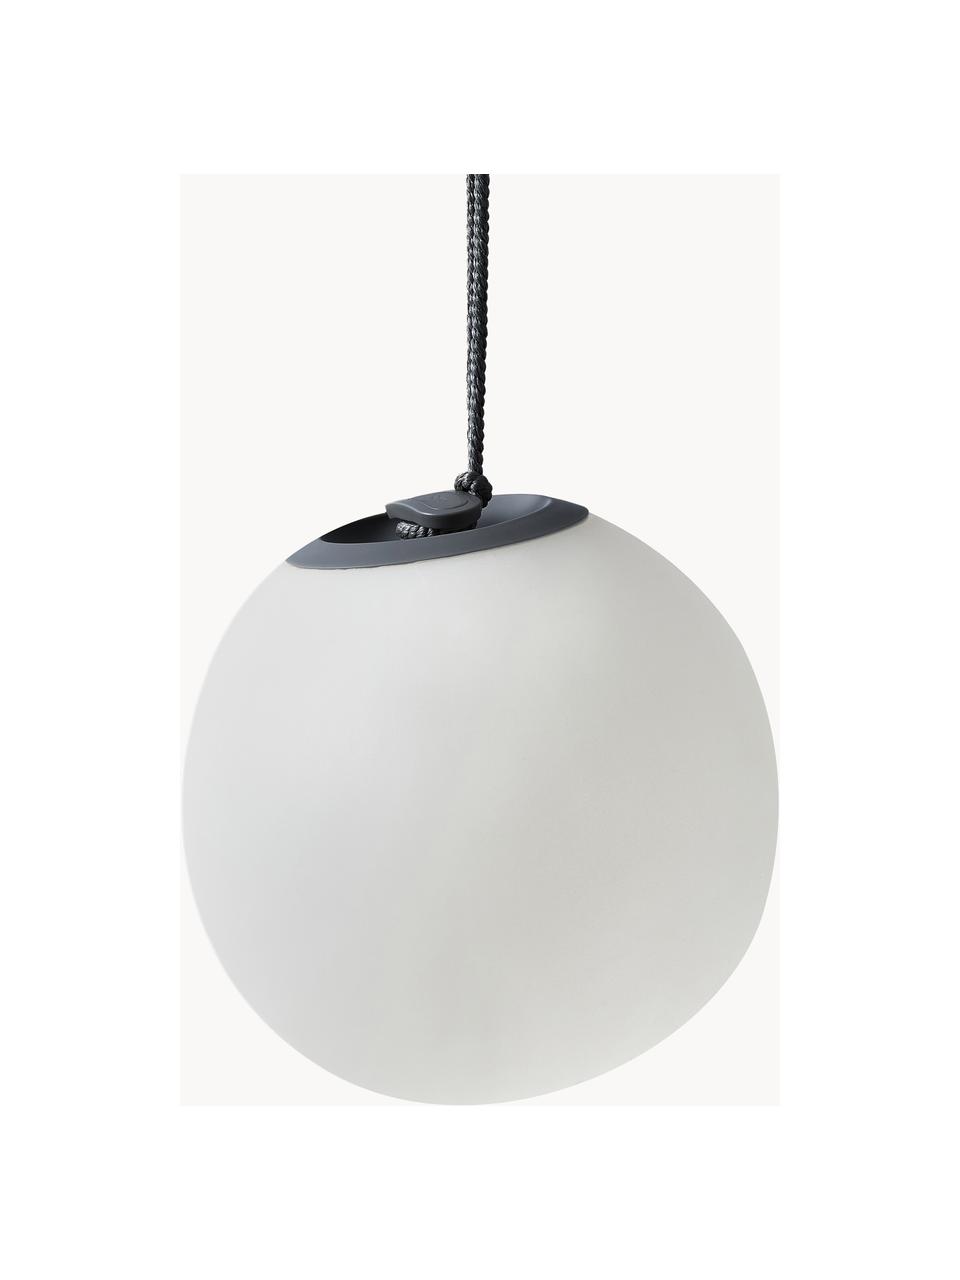 Moblina lampa wisząca LED z funkcją przyciemniania Norai, Biały, ciemny szary, Ø 24 x W 24 cm